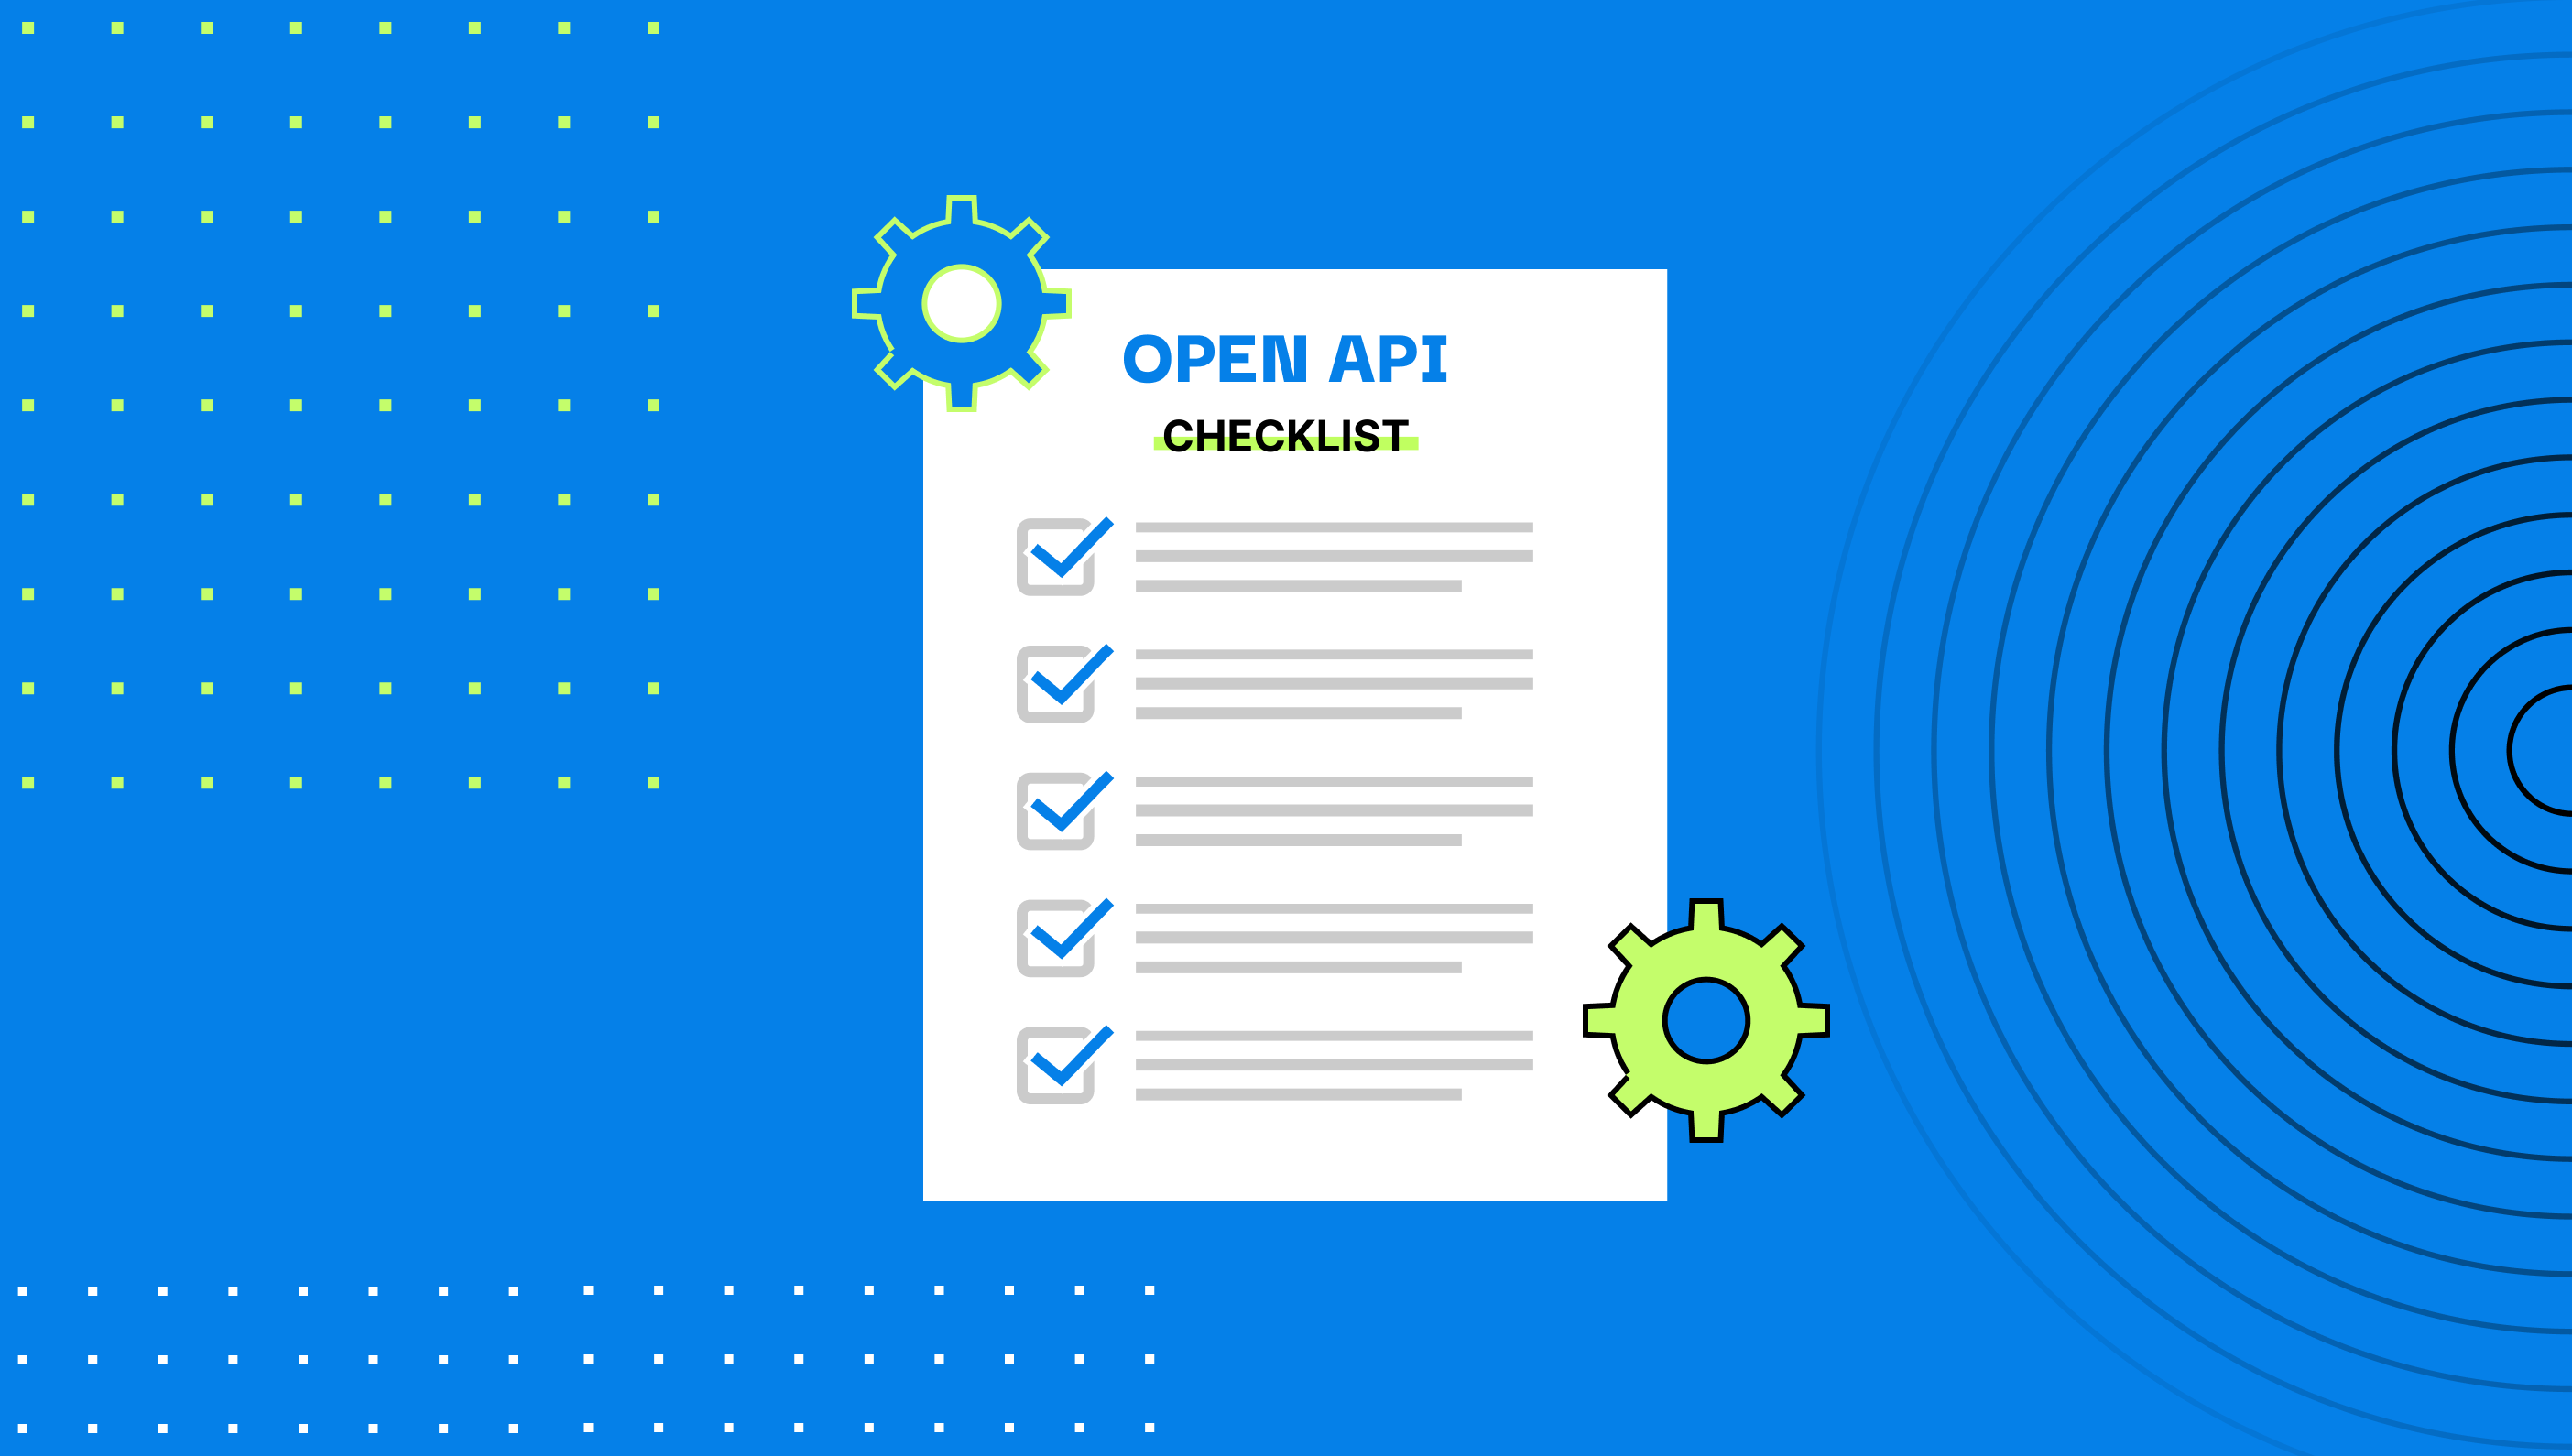 Open API Security Checklist 